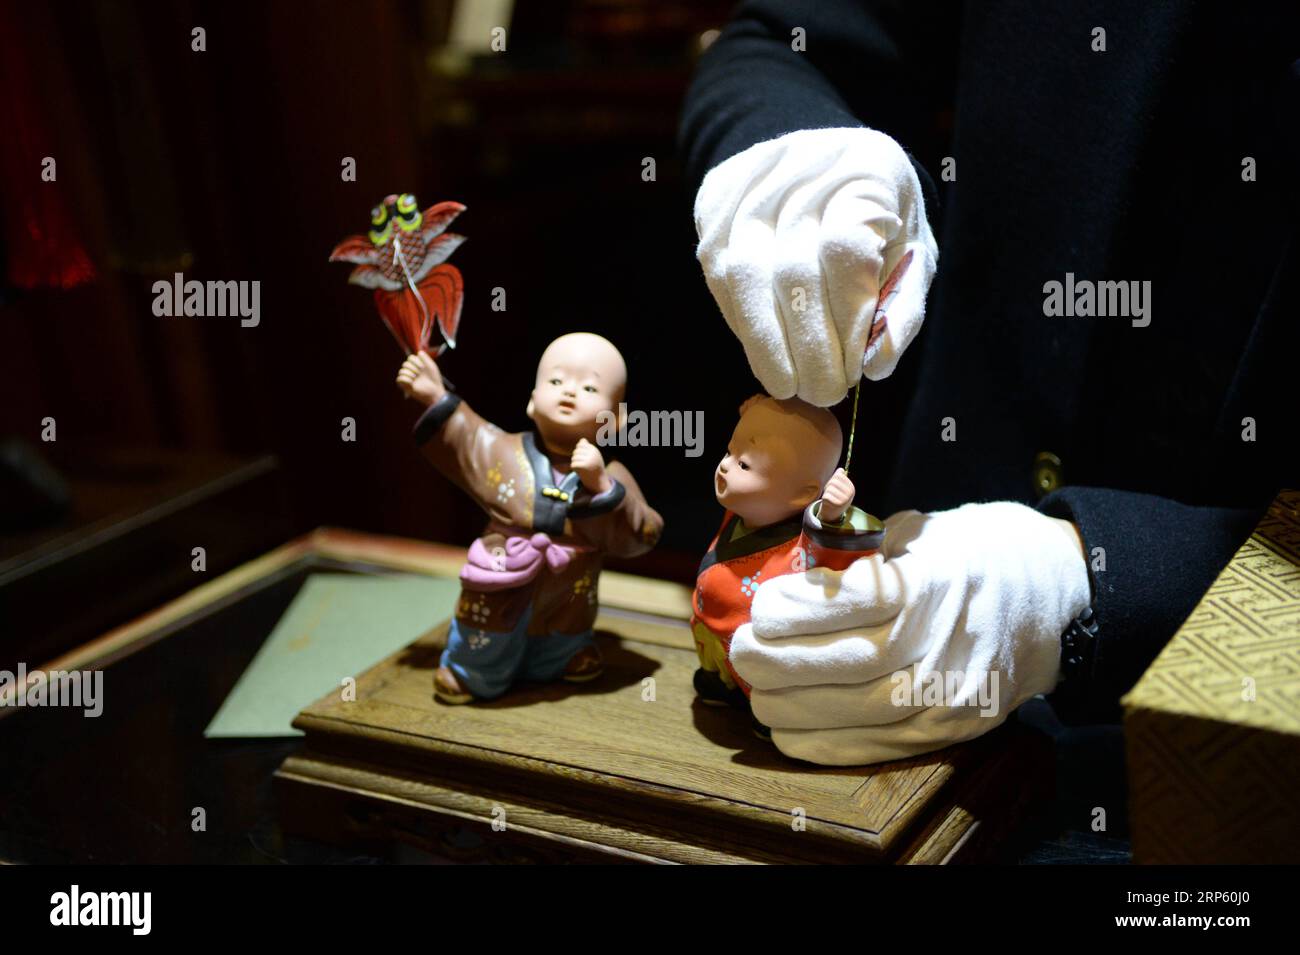 (181229) -- PÉKIN, 29 déc. 2018 (Xinhua) -- un membre du personnel montre les figurines de la galerie d'art Clay Figure Zhang à Tianjin, dans le nord de la Chine, le 28 décembre 2018. Figure d'argile Zhang est un nom familier de l'art populaire traditionnel en Chine, et une telle œuvre a une histoire de près de 200 ans. Zhang Yu, le fabricant de figurines en argile de sixième génération de sa famille, a pris en charge l’entreprise familiale en 1996, alors qu’il n’avait que 18 ans. Au fil du temps, le métier et la marque ont évolué. Au lieu de fabriquer des figurines et de les vendre comme un vendeur de rue, il a embauché des directeurs artistiques pour exploiter et commercialiser le va artistique Banque D'Images